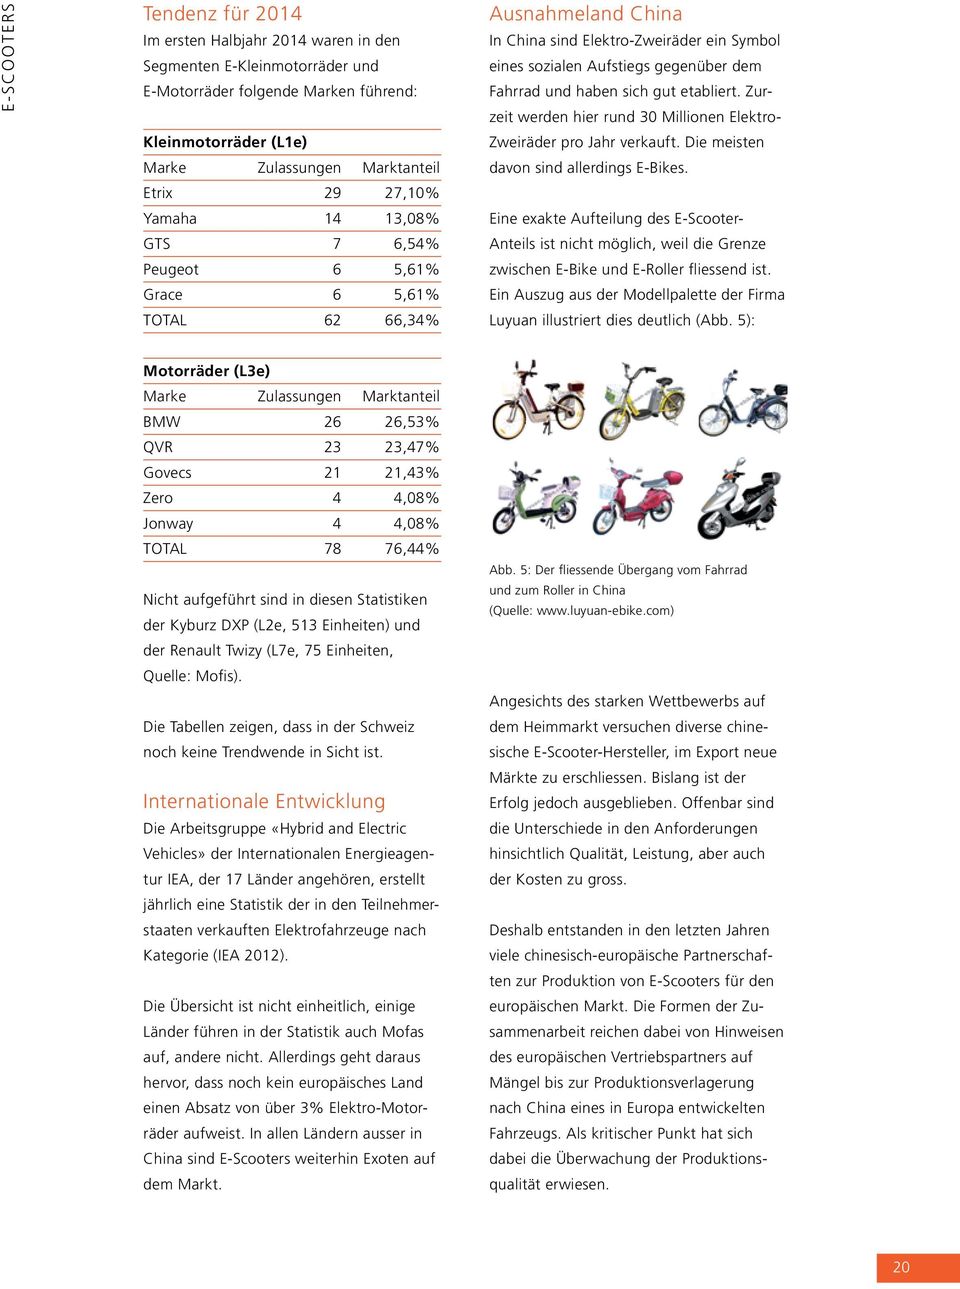 haben sich gut etabliert. Zurzeit werden hier rund 30 Millionen Elektro- Zweiräder pro Jahr verkauft. Die meisten davon sind allerdings E-Bikes.